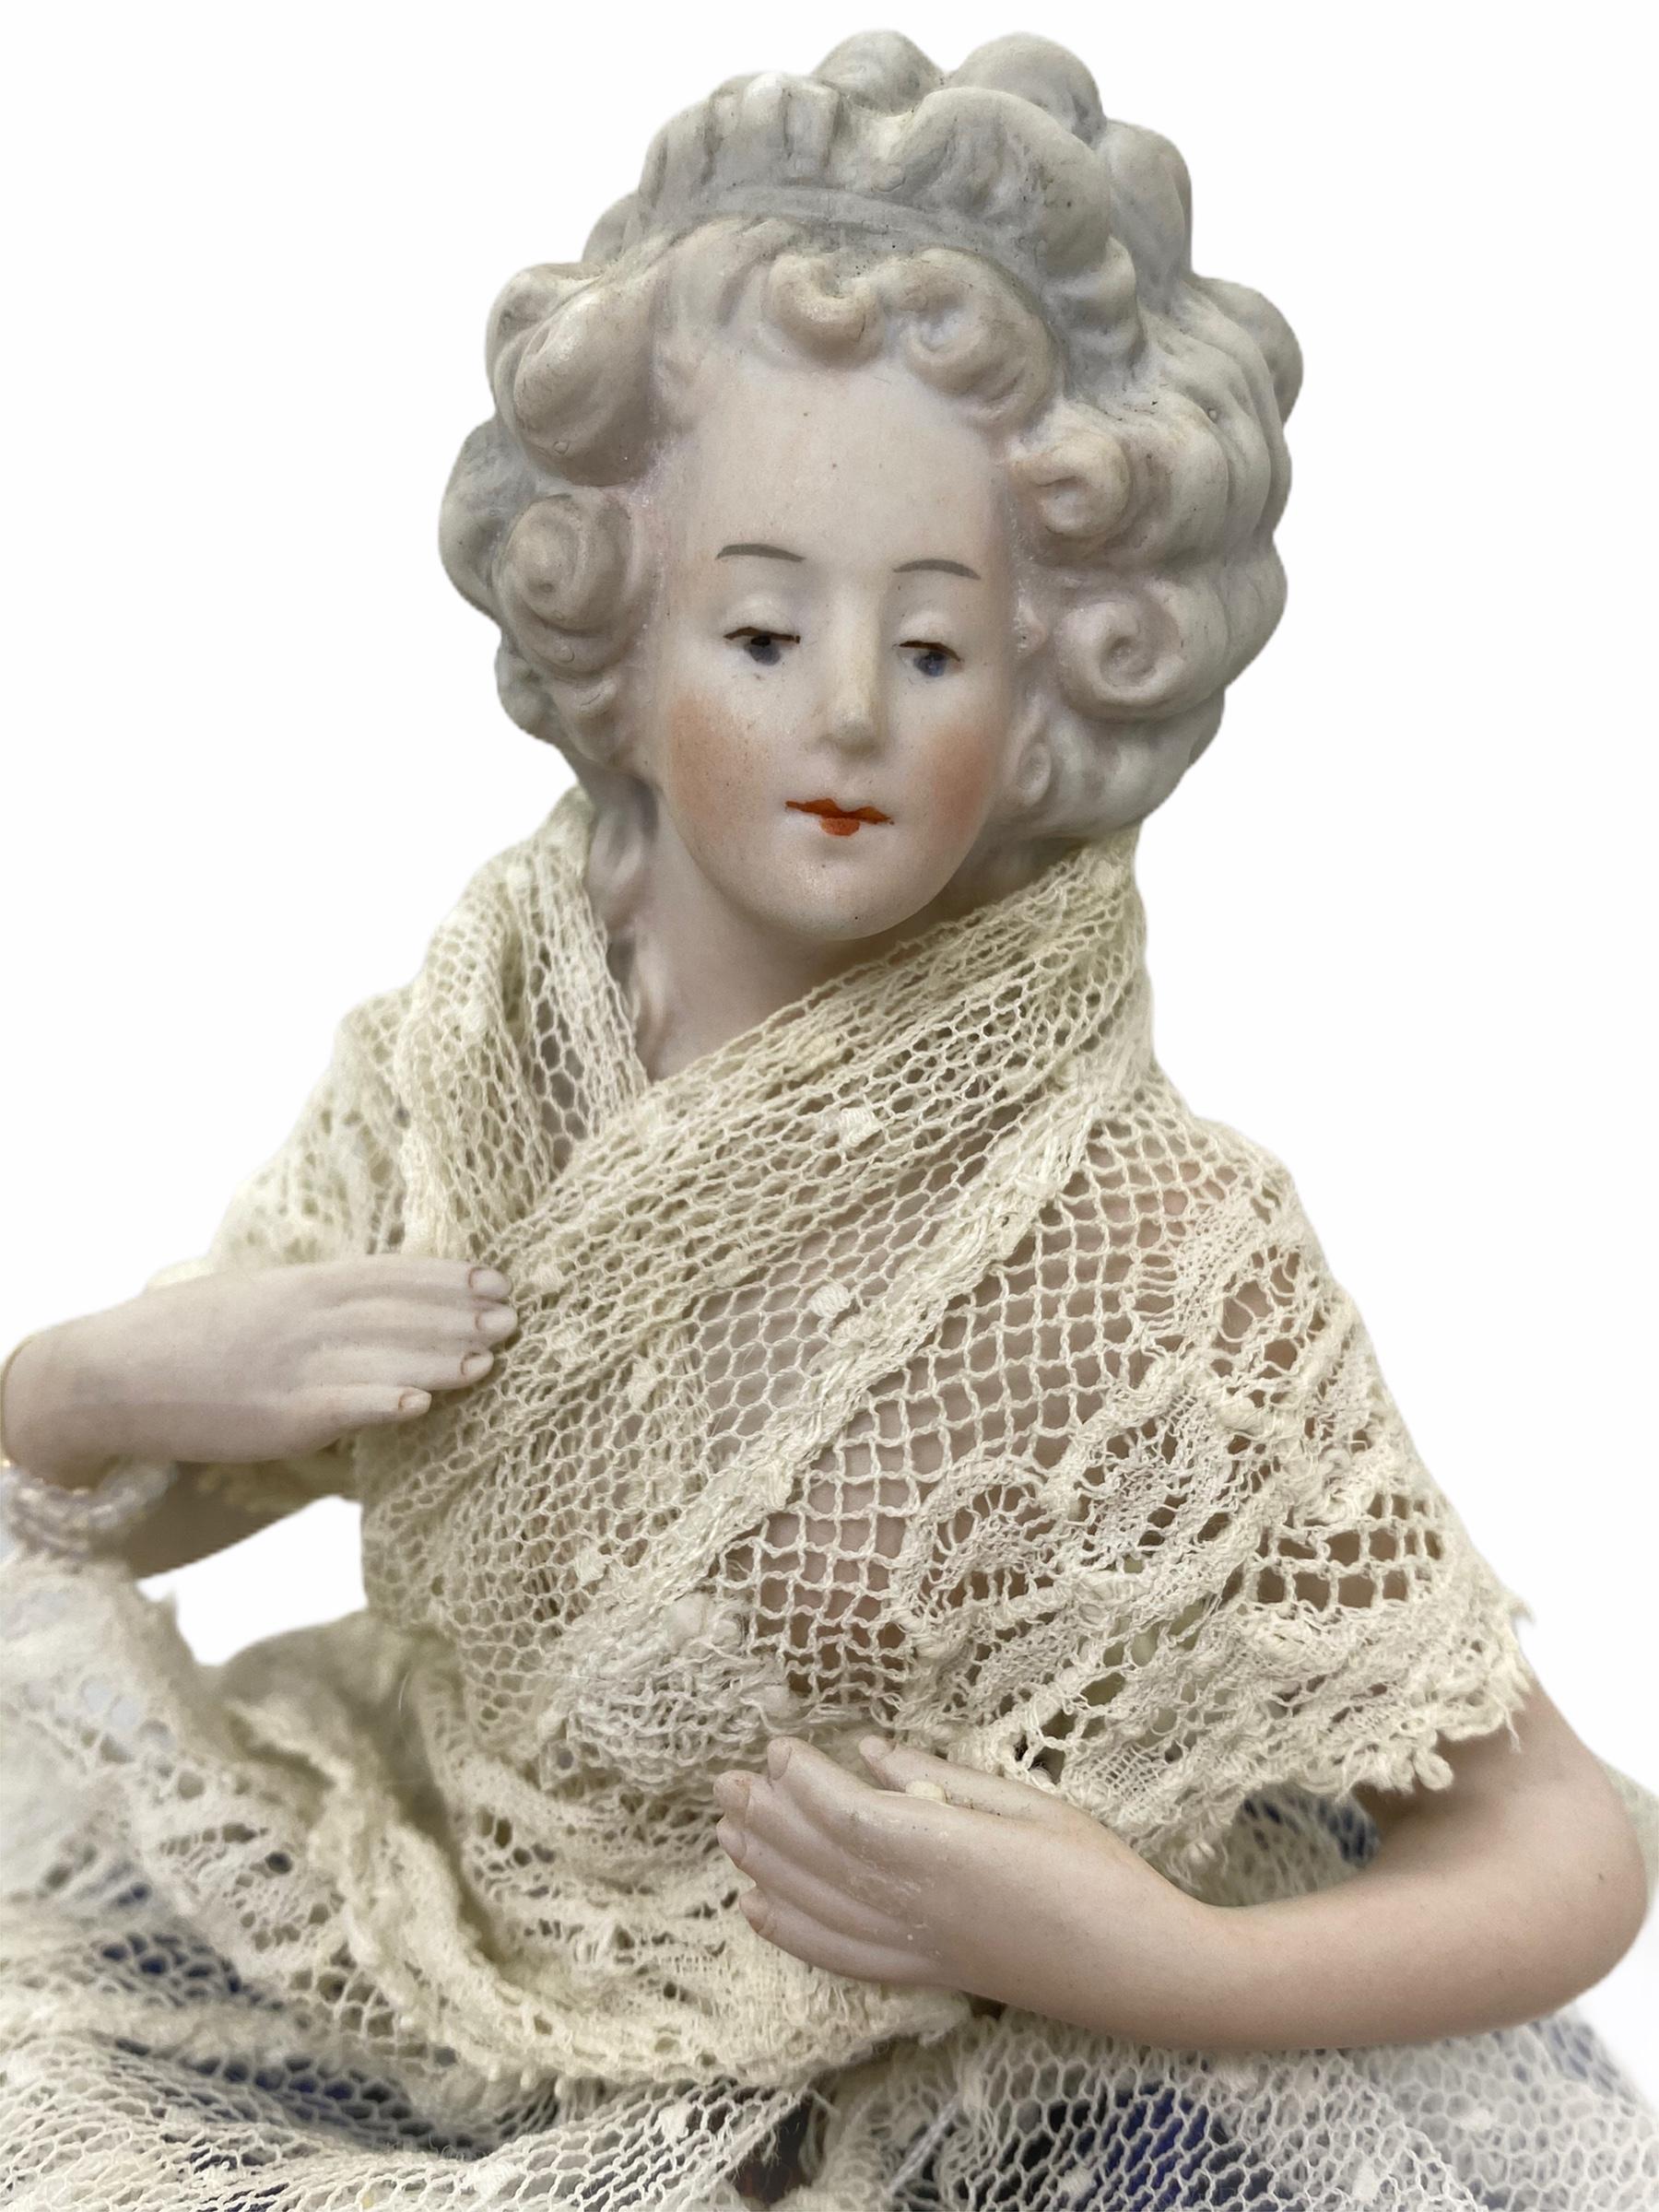 Une petite demi-poupée allemande ancienne avec une robe en dentelle originale sur une base en fil de fer.
Elle éloigne la main. Il est marqué du numéro de moule 7125/5.
Il est en très bon état, sans éclats, fissures ou restaurations.